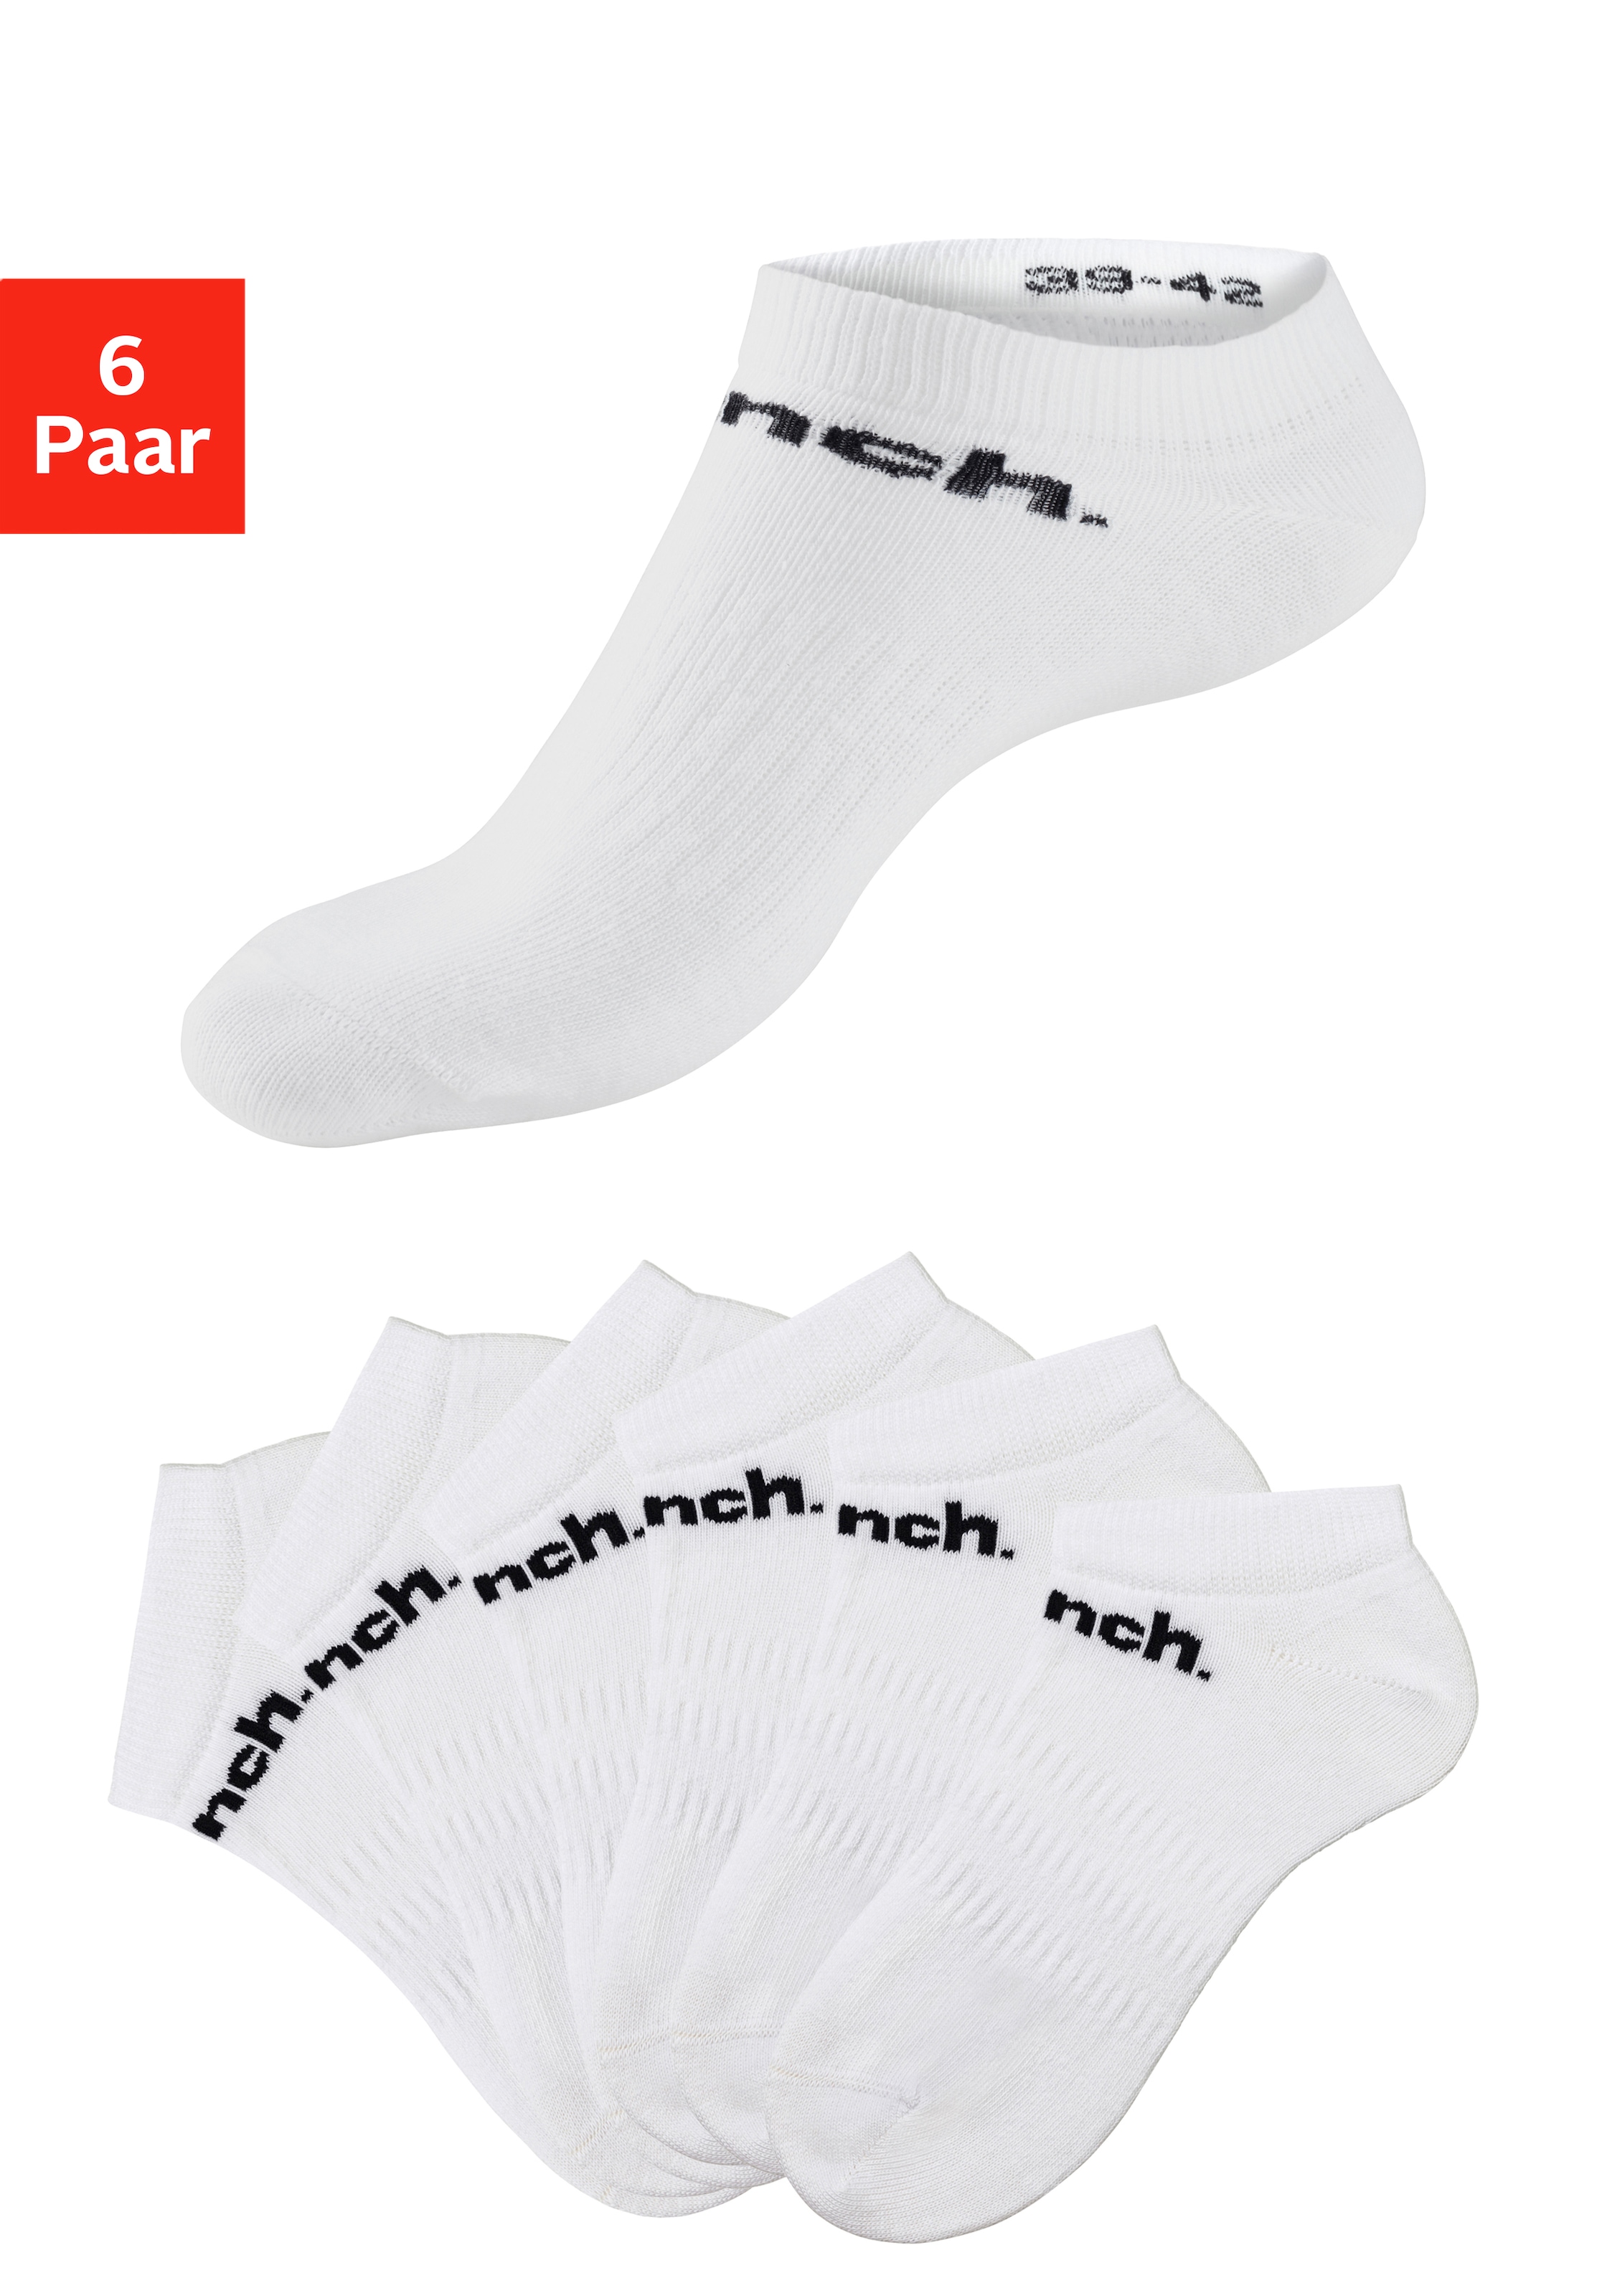 kaufen jetzt online Weisse Socken